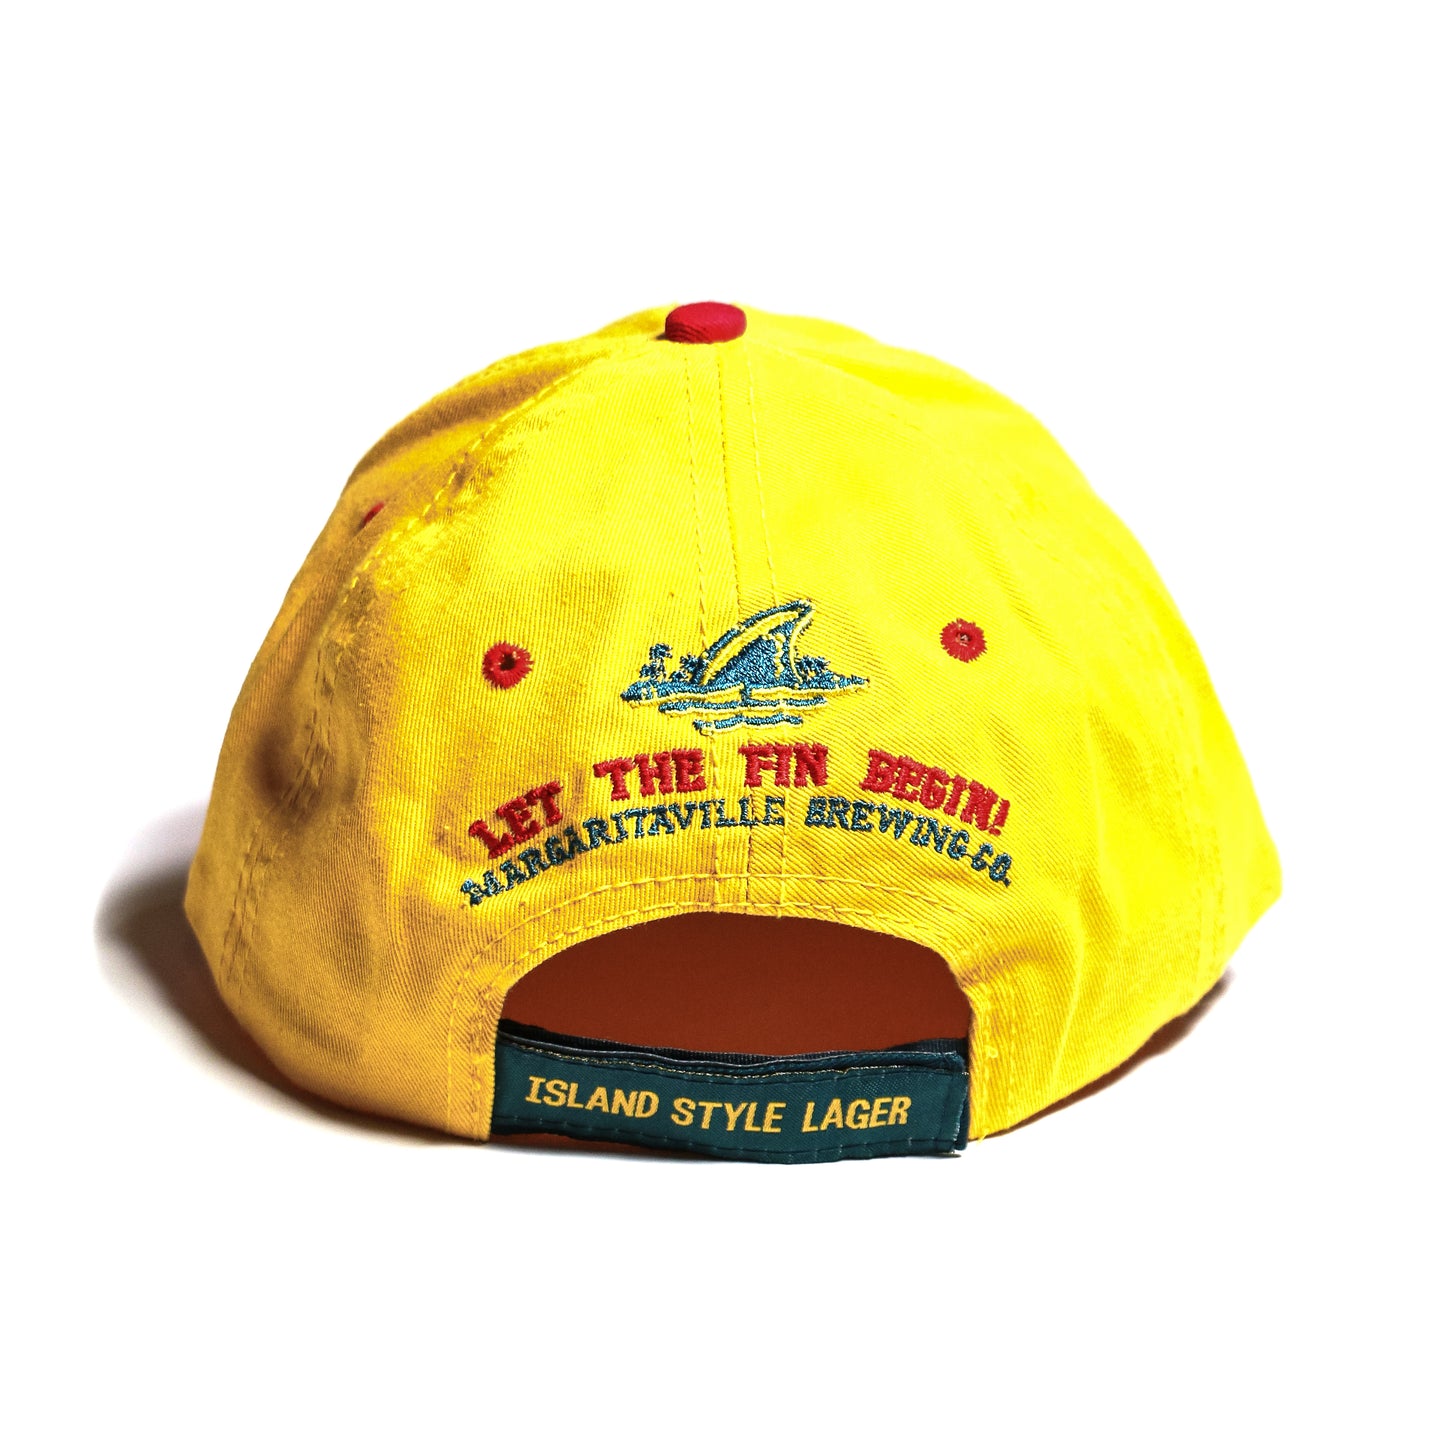 Vintage LANDSSHARK  CAP / YELLOW